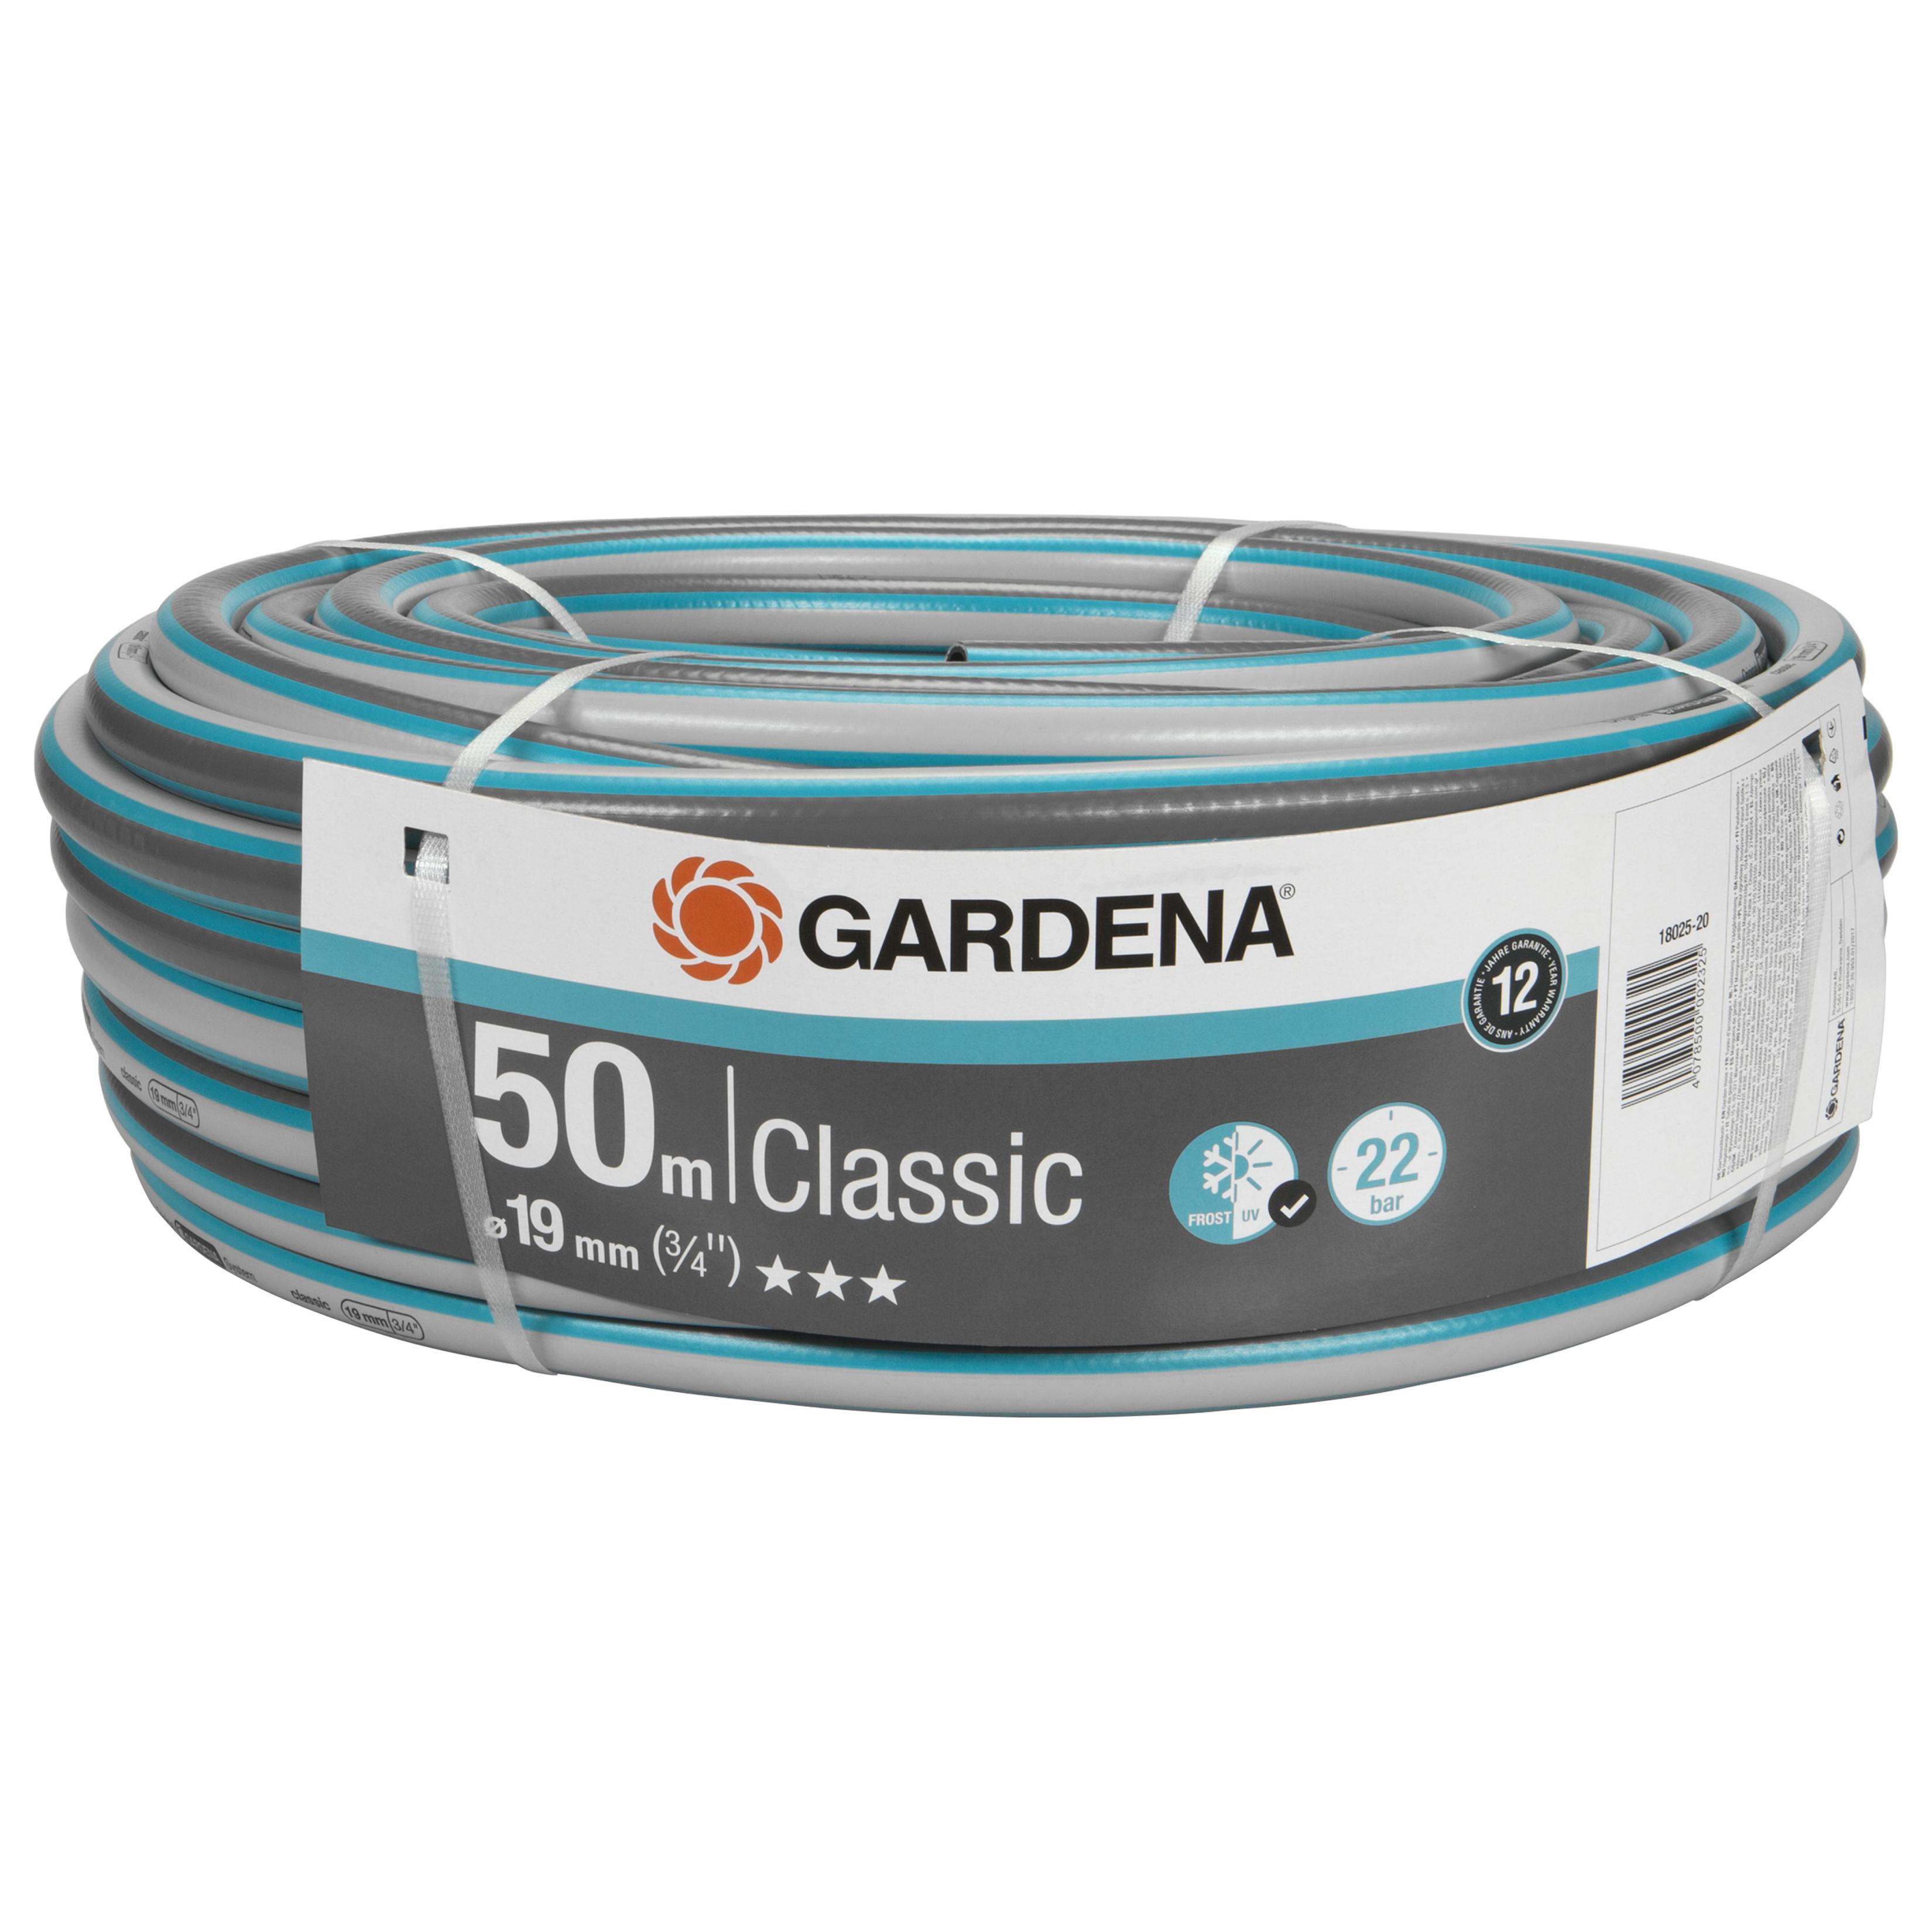 Gardena - Classic Hose 19 mm 50m - Hage, altan og utendørs